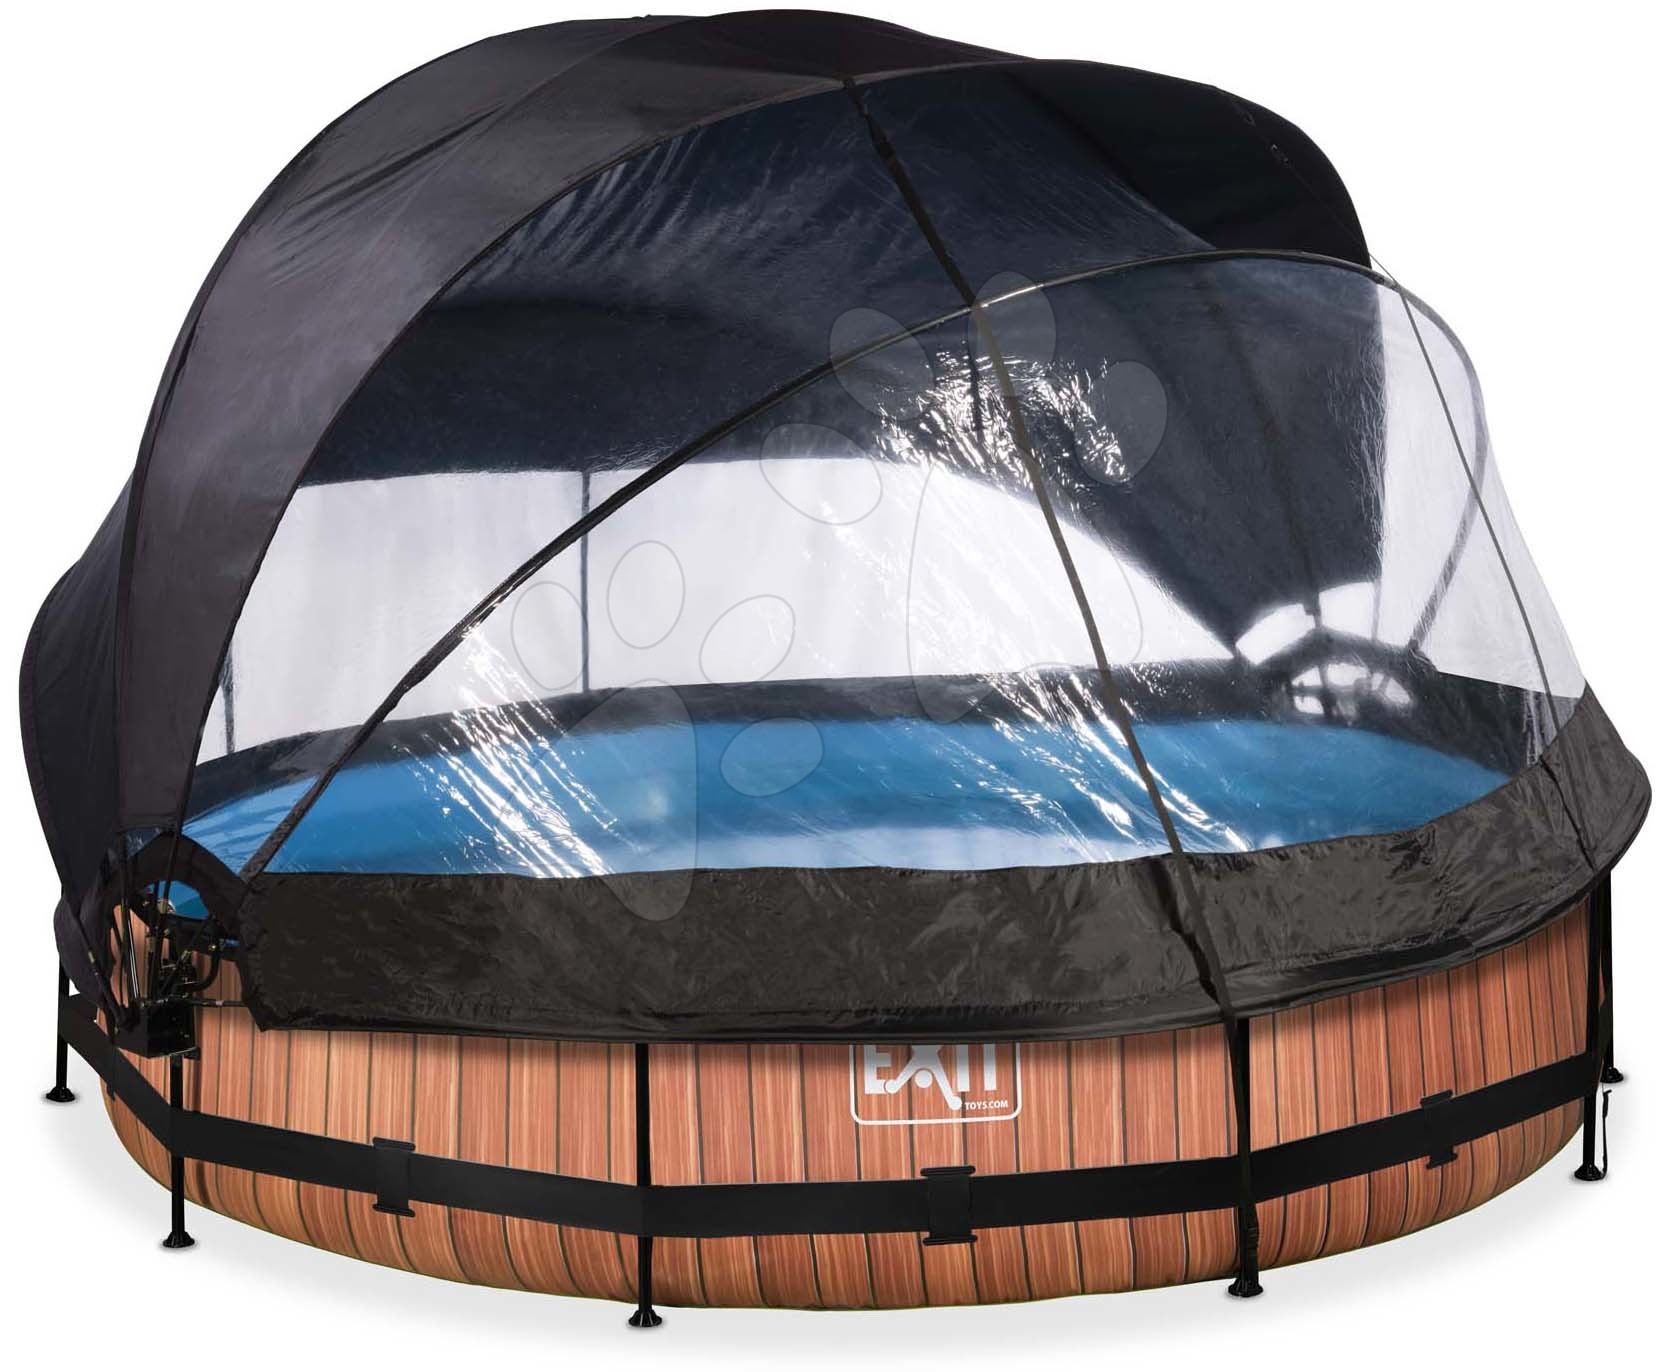 Medence napellenzővel búrával és szűrővel Wood pool Exit Toys kerek acél medencekeret 360*76 cm barna 6 évtől